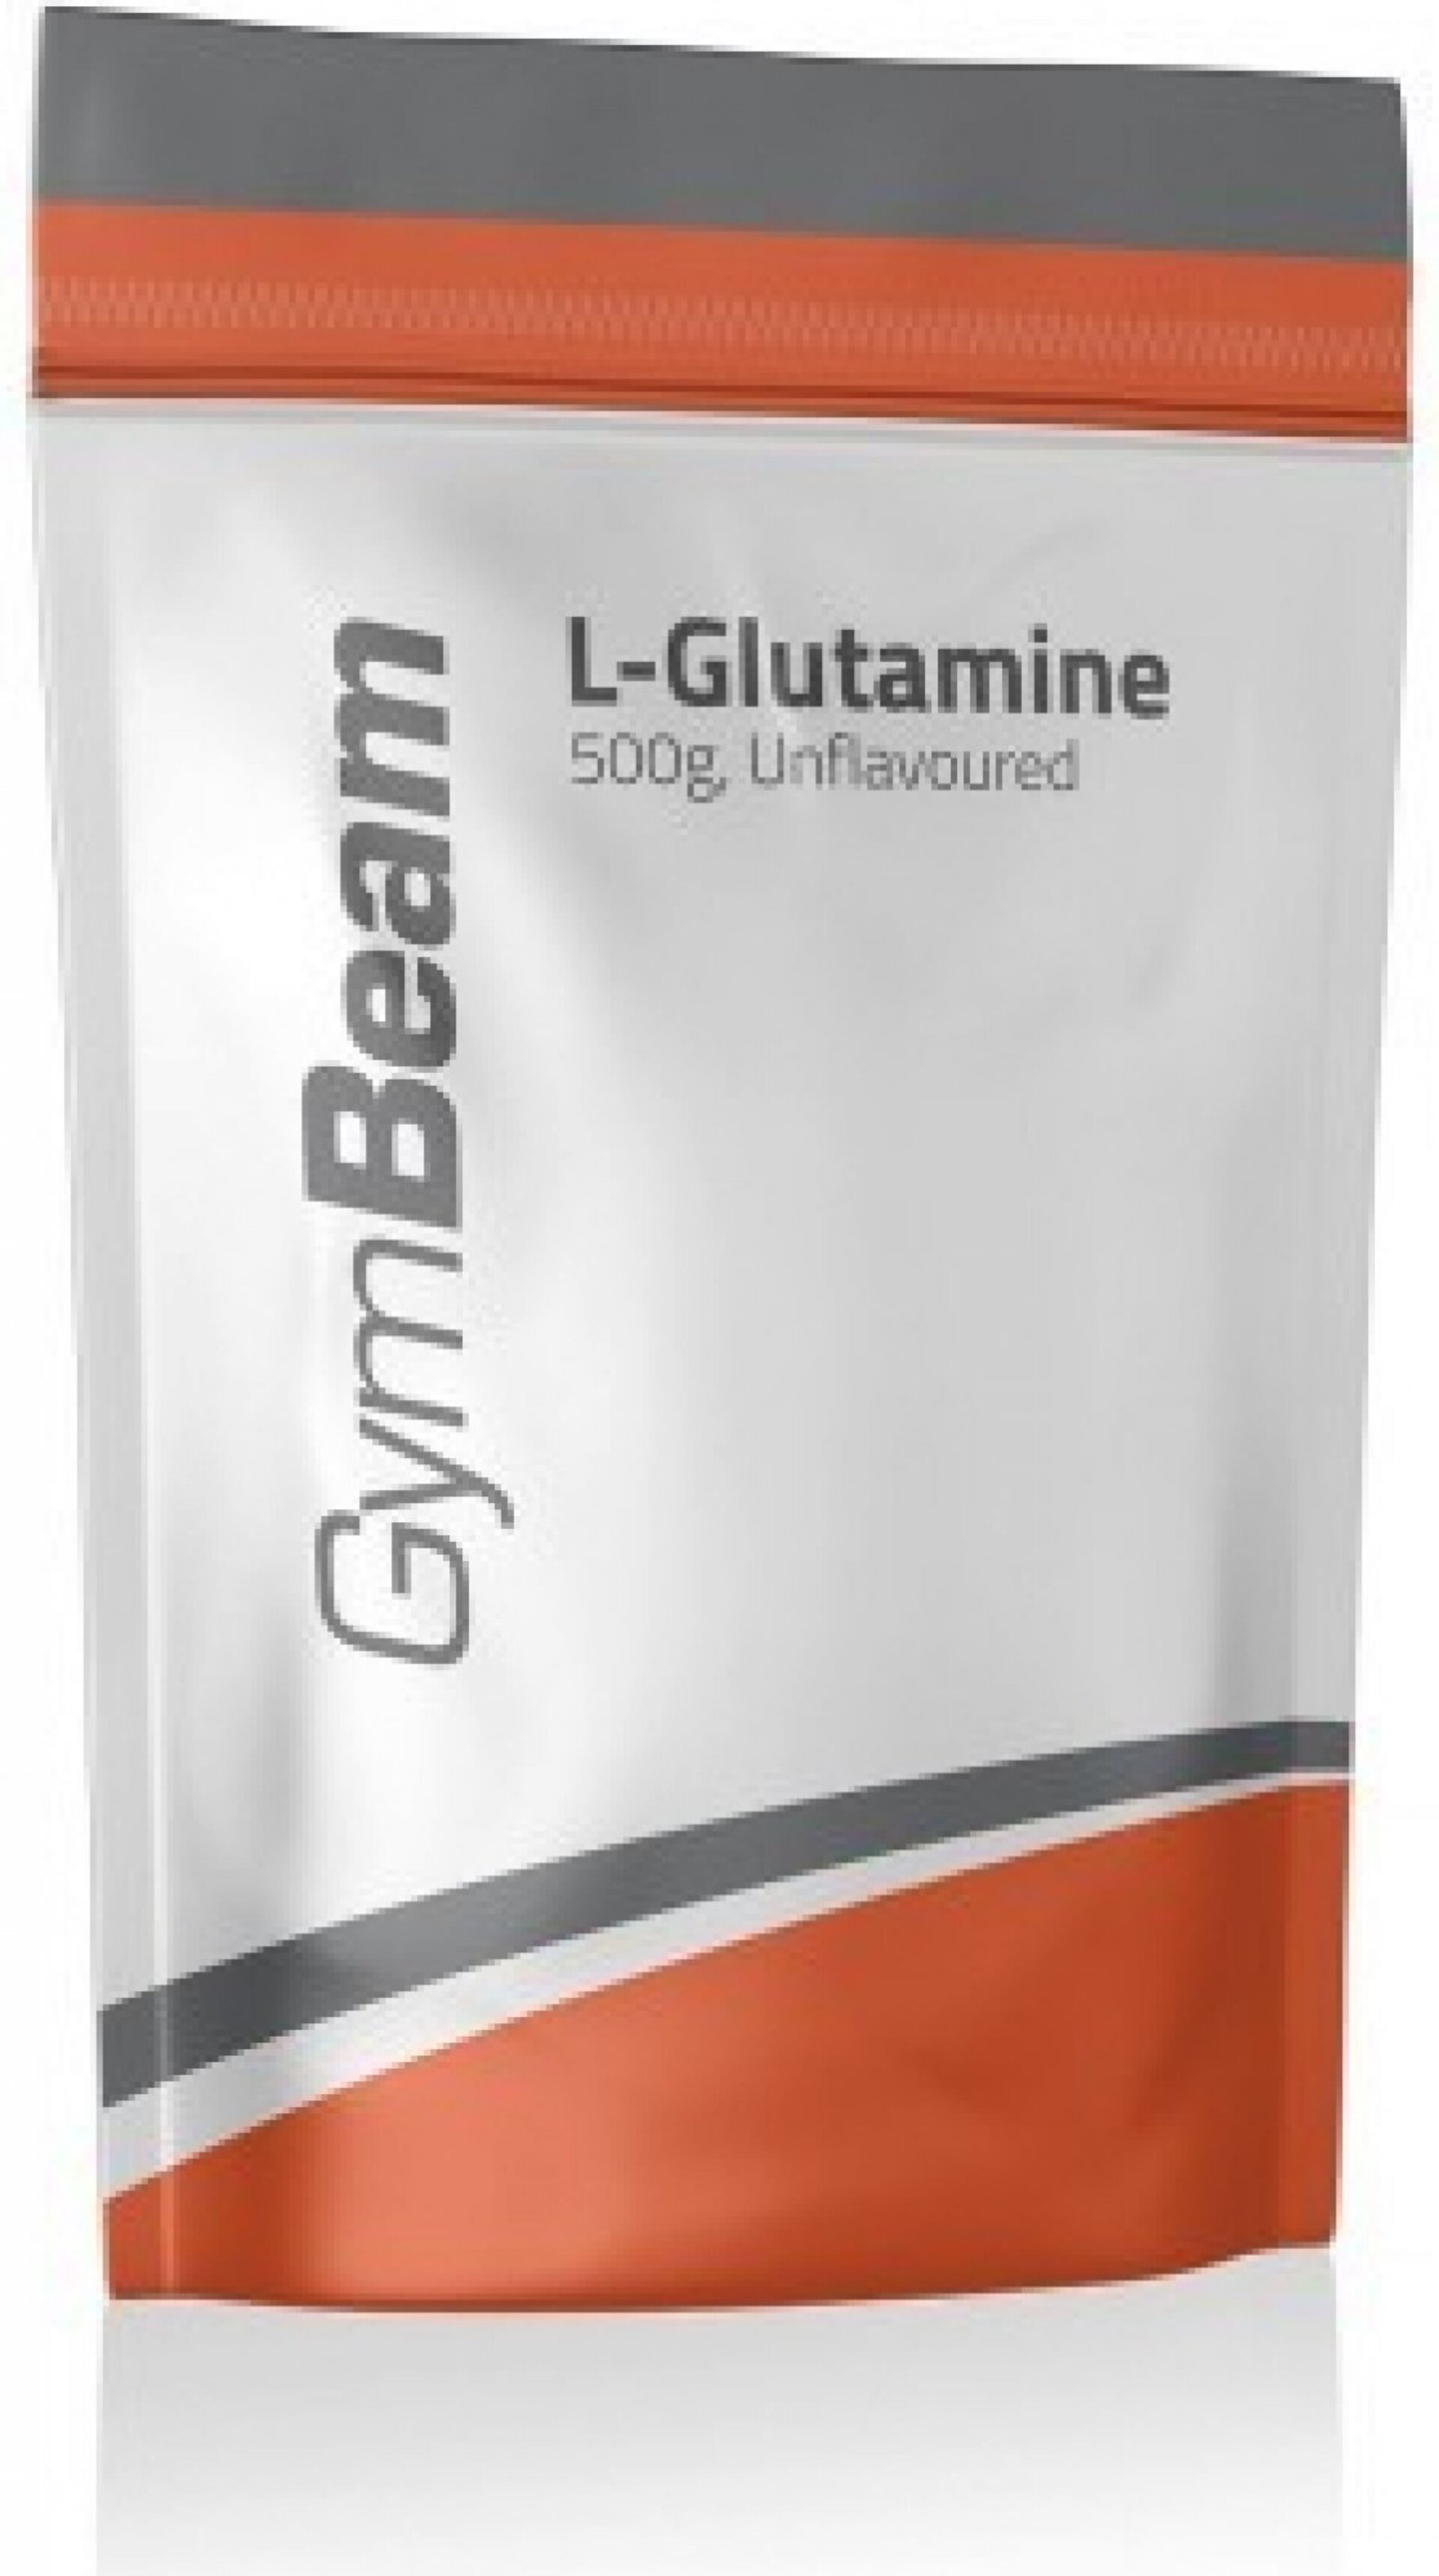 GymBeam L-Glutamín 250 g